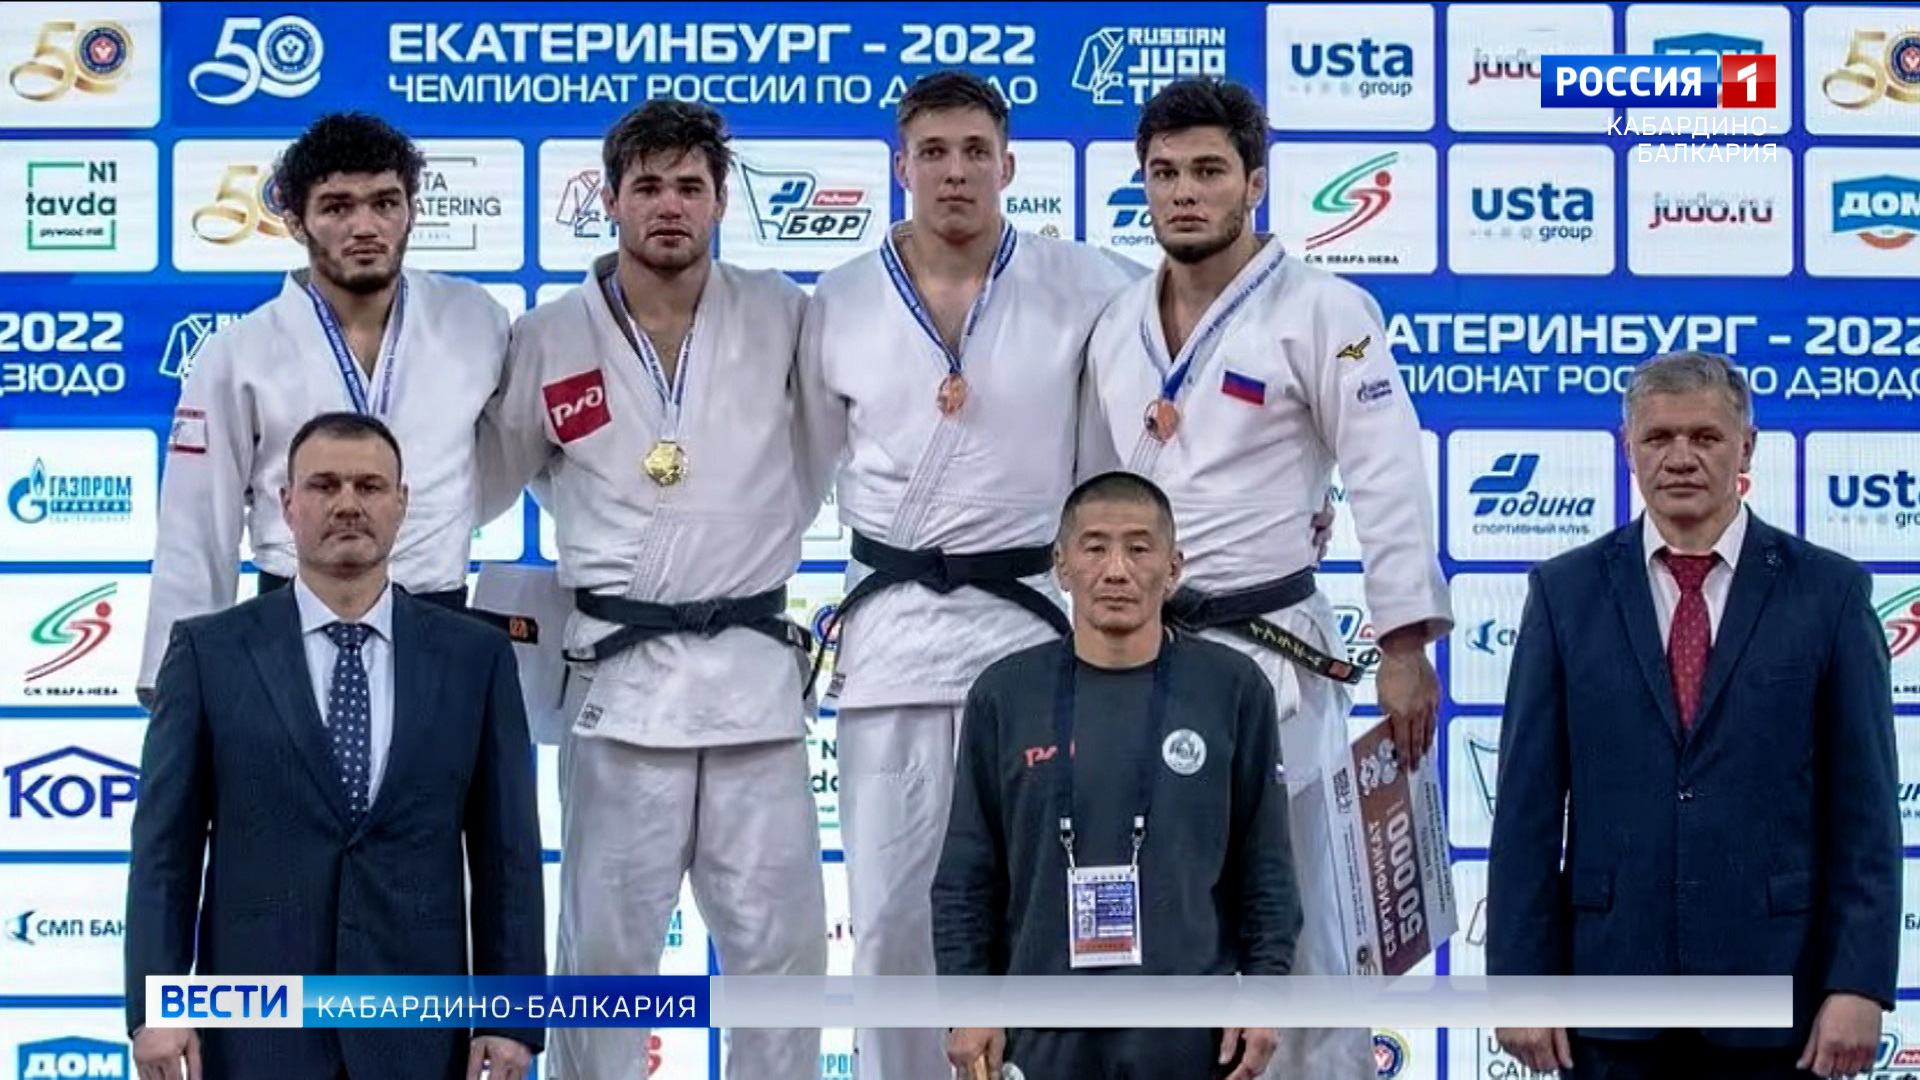 Спортсмен из КБР Ислам Шогенов стал чемпионом России по дзюдо